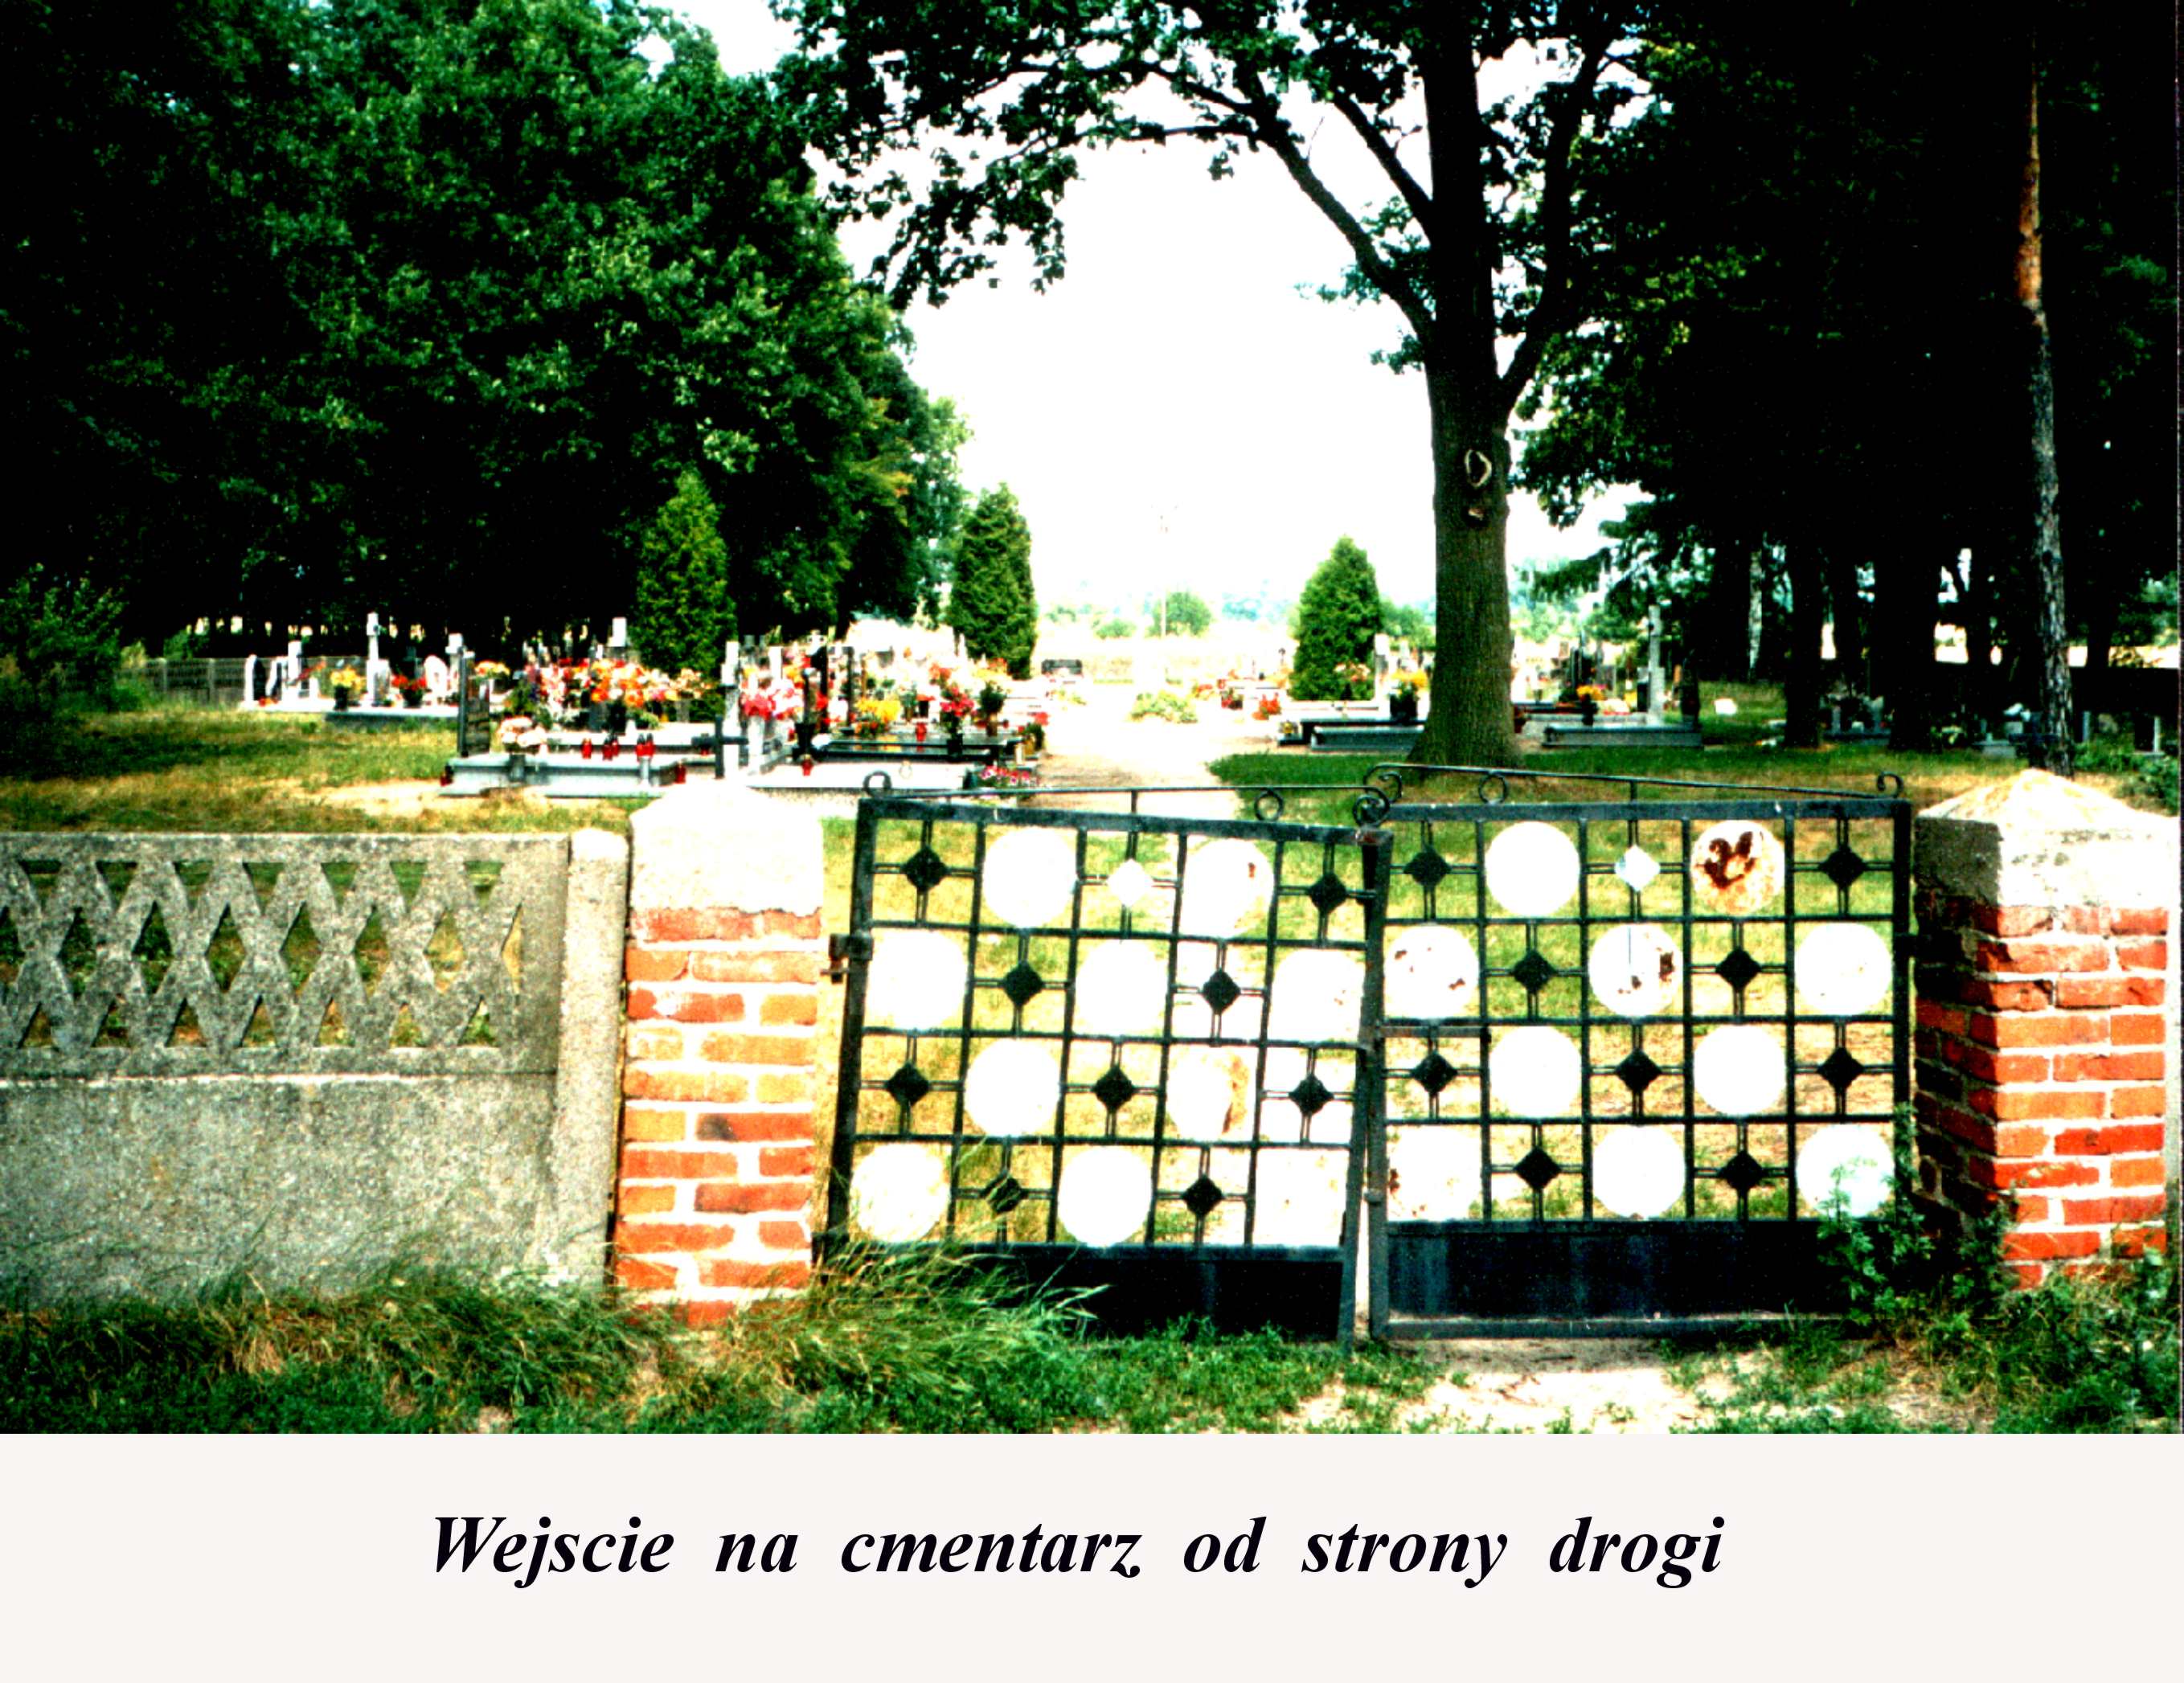 kronika wieczyna - aas56-Wejście na cmentarz od strony drogi.jpg